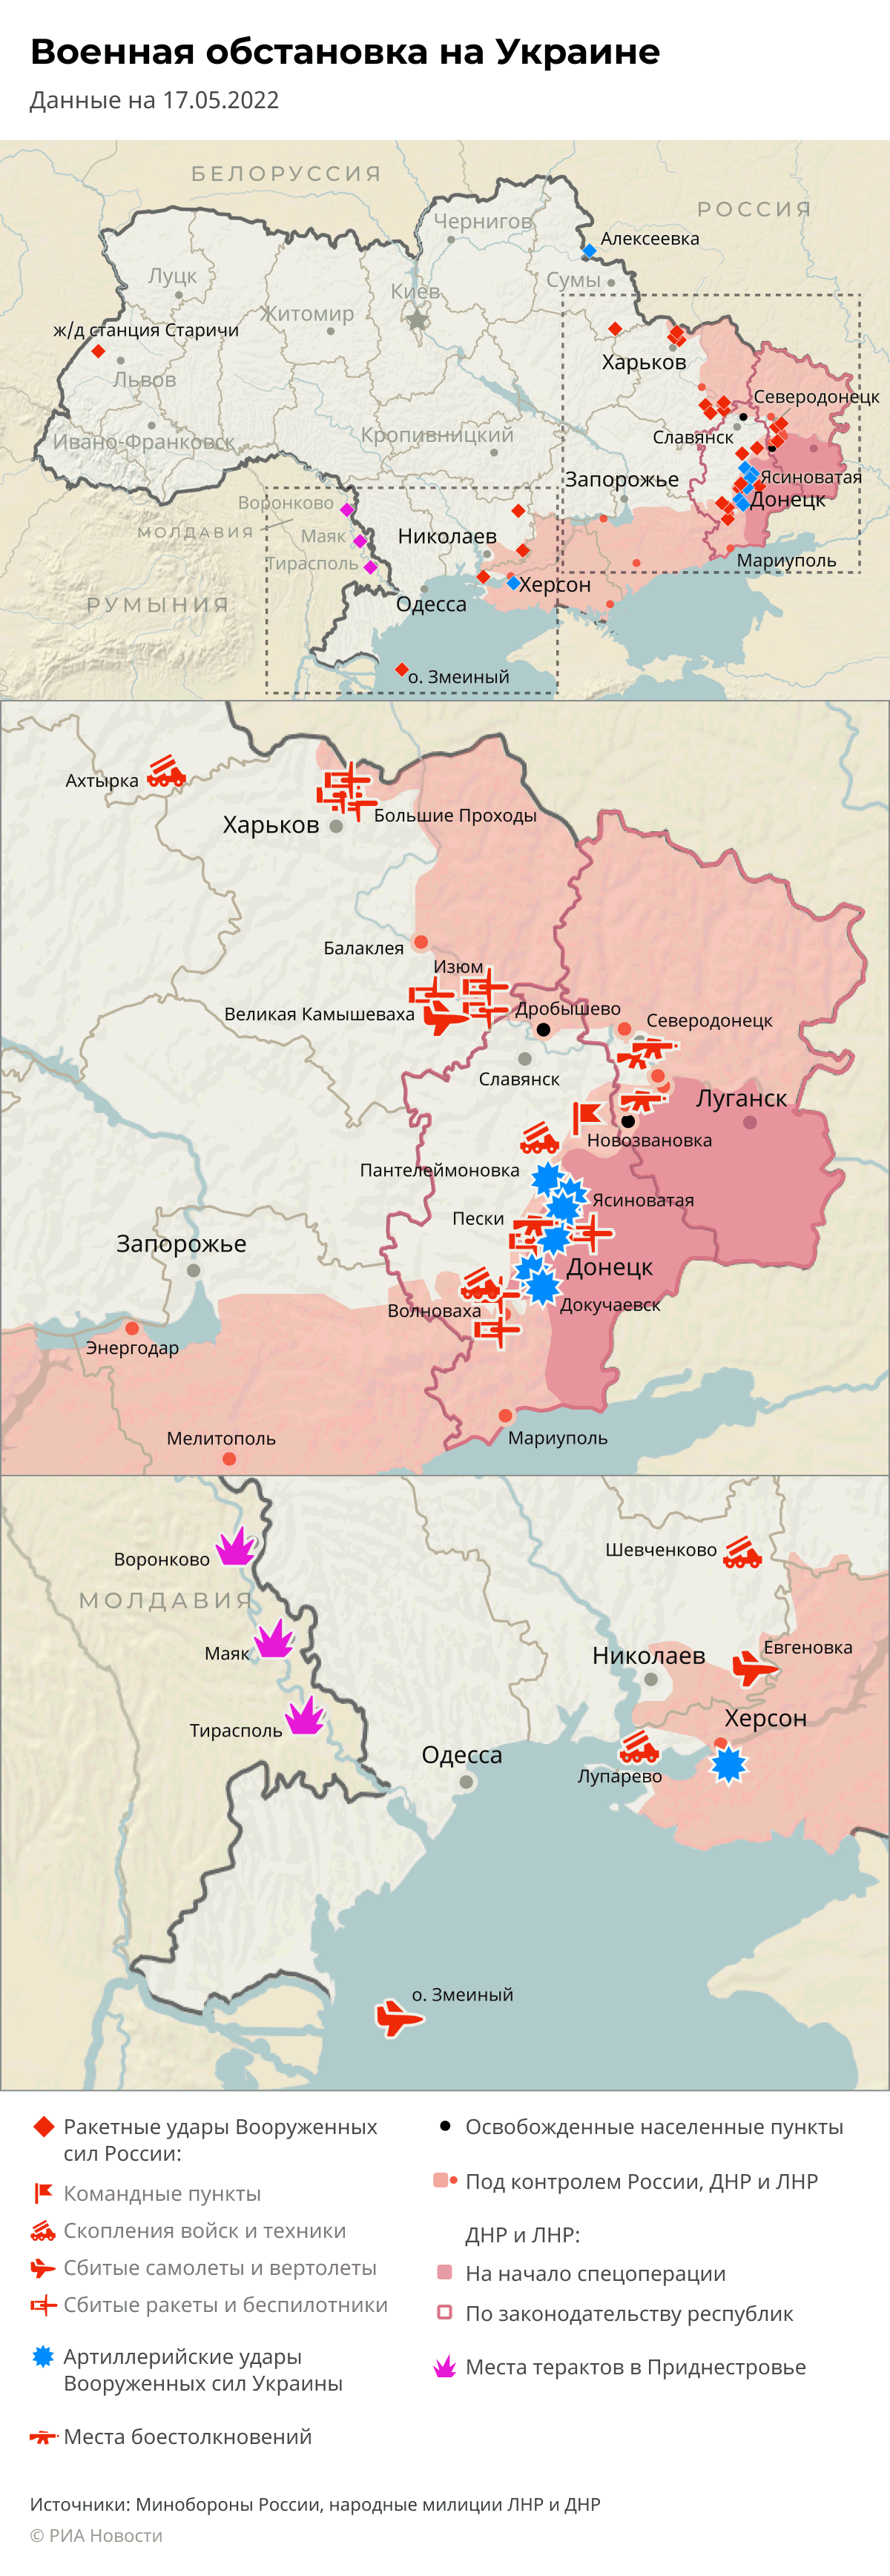 Mapa speciální operace na Ukrajině - vojenská situace na Ukrajině 17.5.2022